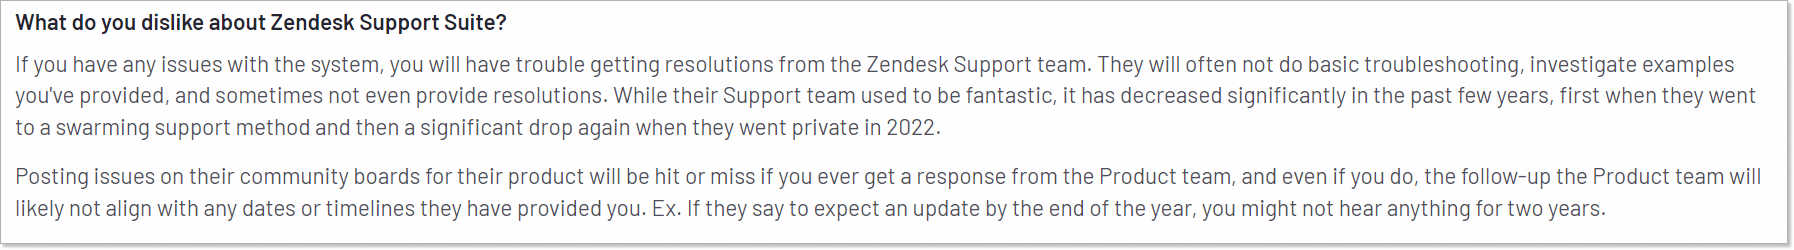 негативний відгук про службу підтримки zendesk